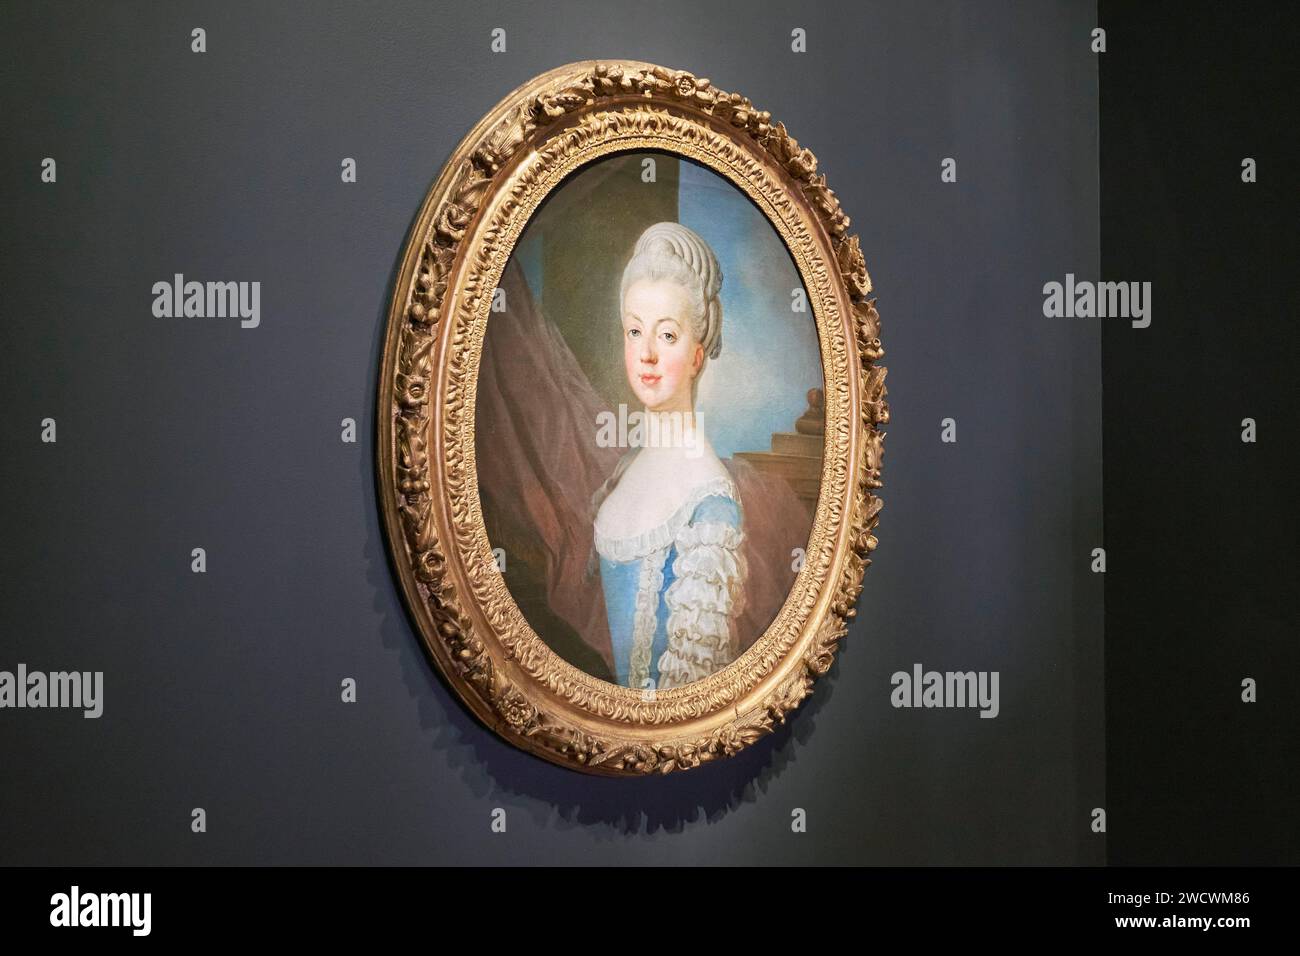 Frankreich, Yvelines, Versailles, Schloss von Versailles, von der UNESCO zum Weltkulturerbe erklärt, Gemälde von Marie Antoinette von Joseph Siffred Duplessis Stockfoto